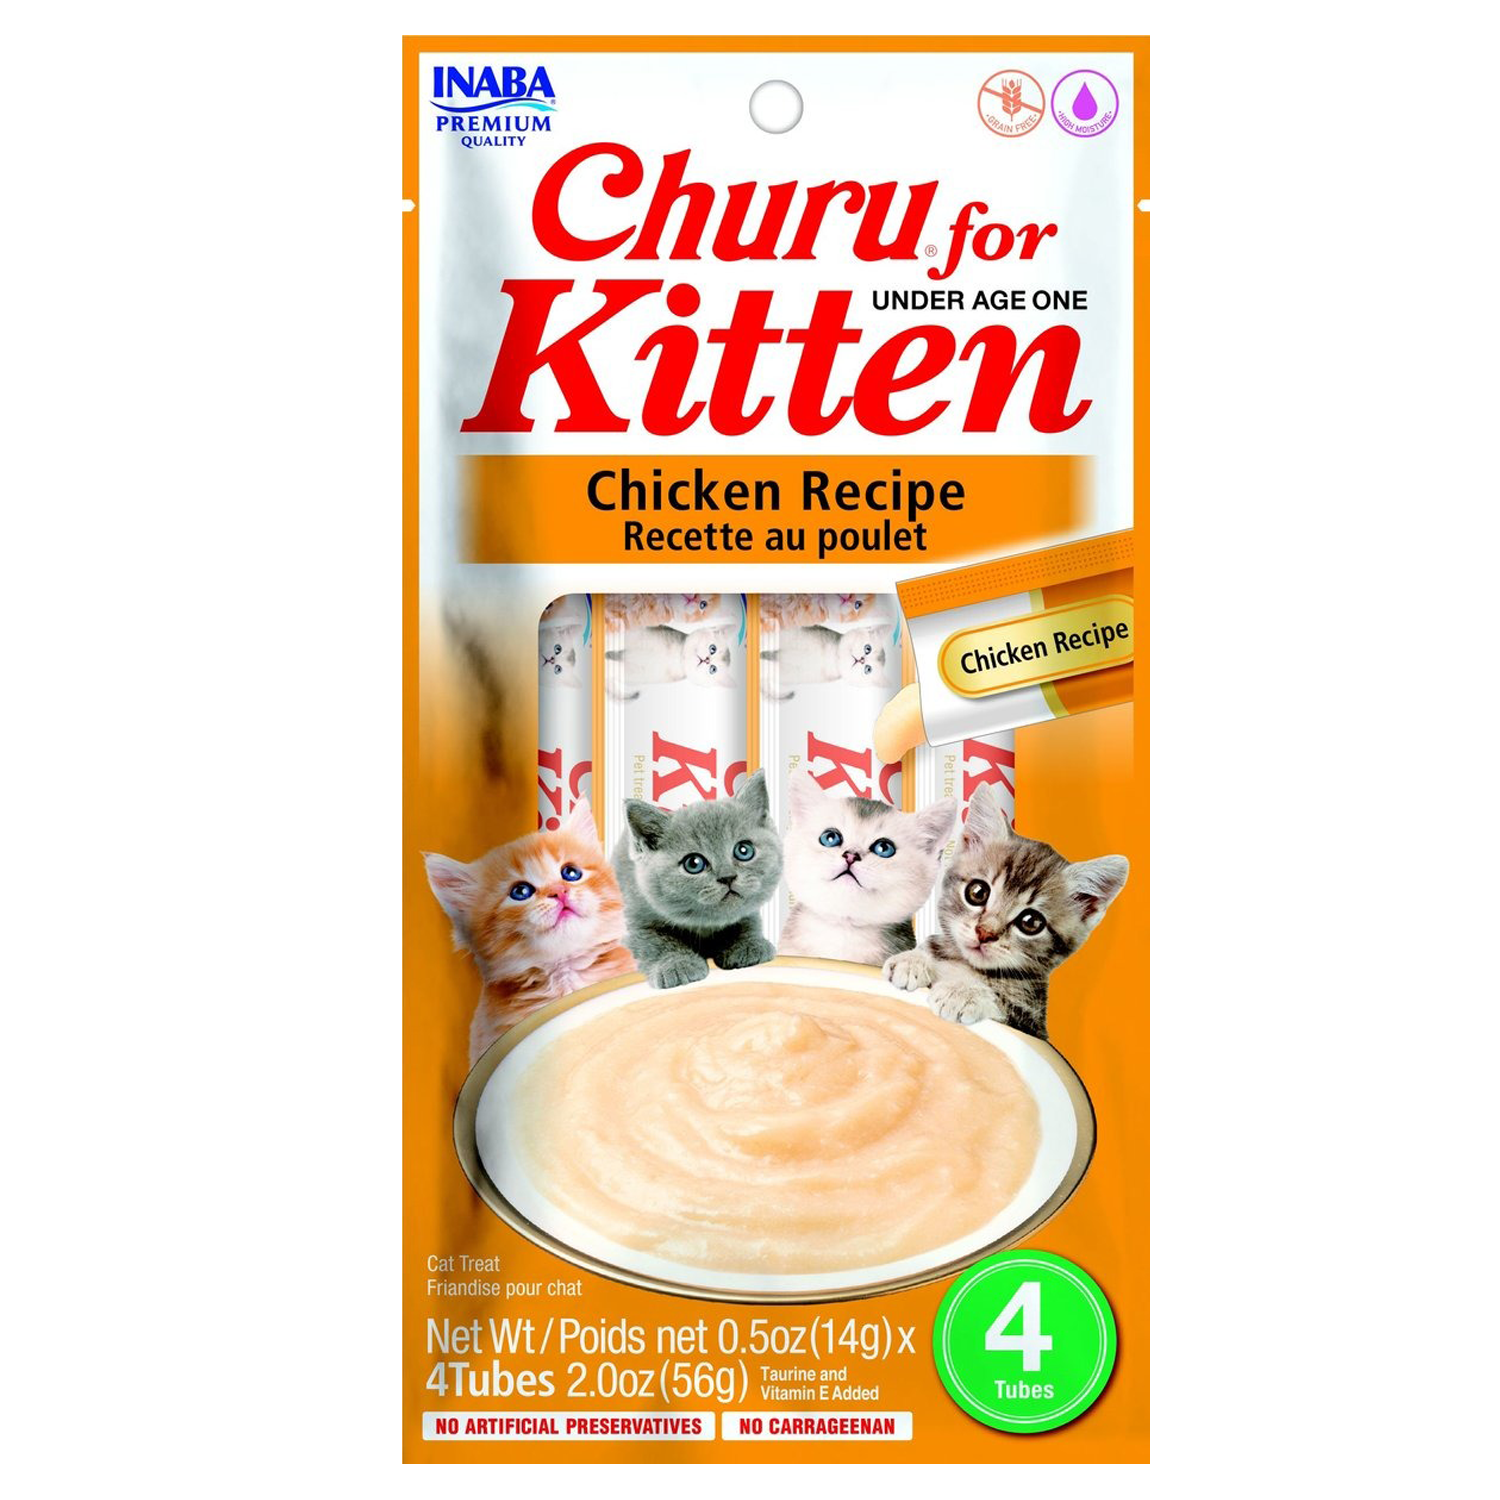 Churu for Kittens Chicken Recipe